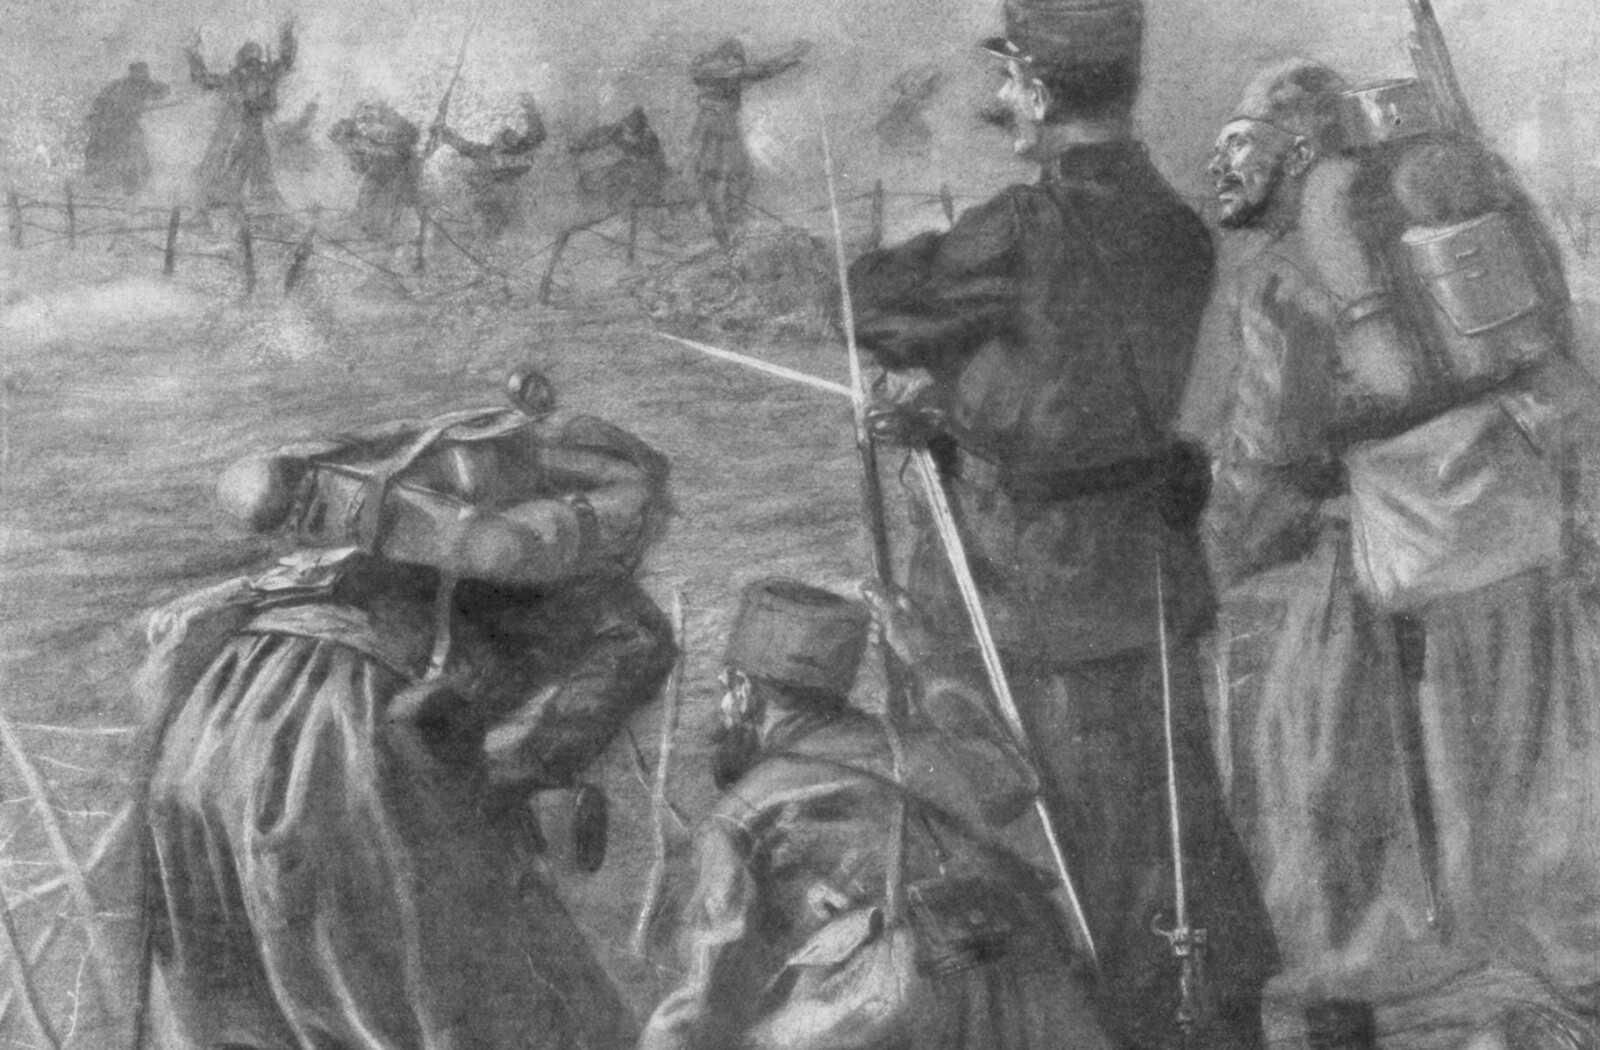 <b>FØRSTE KLORGASSDØD:</b> Franske og algeriske soldater (zouaves) segner om under det andre slaget ved Ypres i Belgia 22. april 1915. Mot slutten av krigen hadde begge krigførende parter en utstrakt bruk av giftgass.